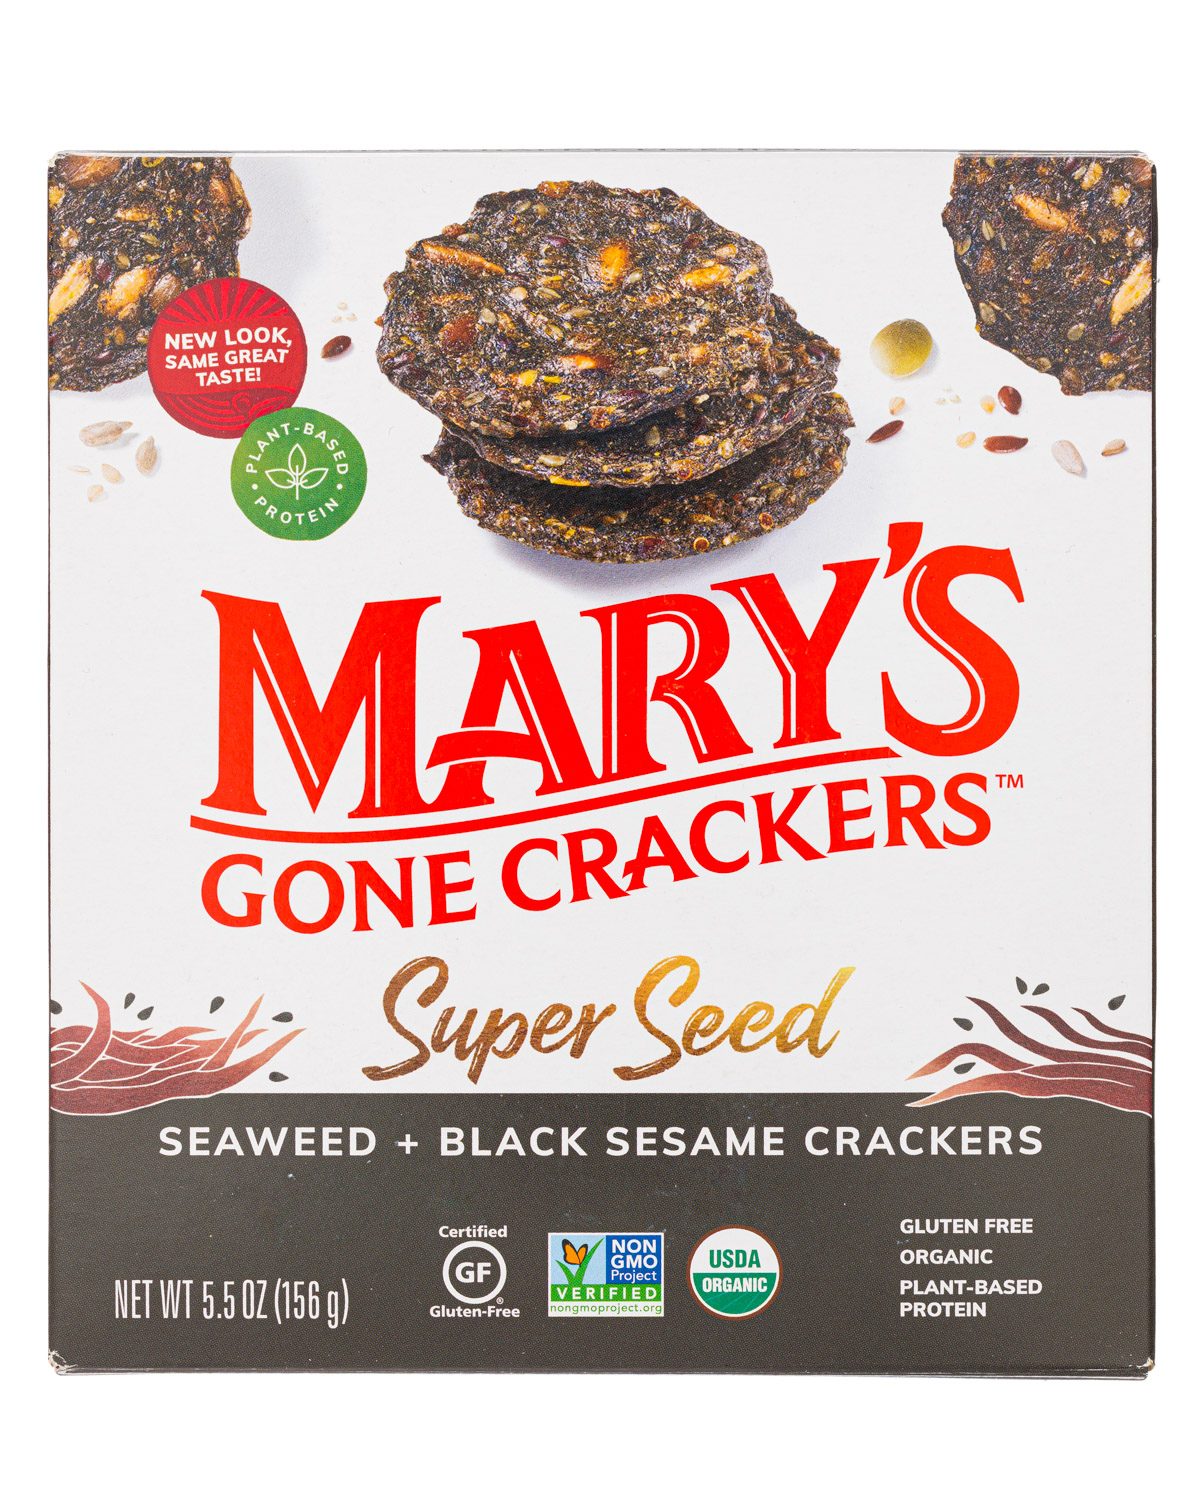 Seaweed + Black Sesame Crackers 2021